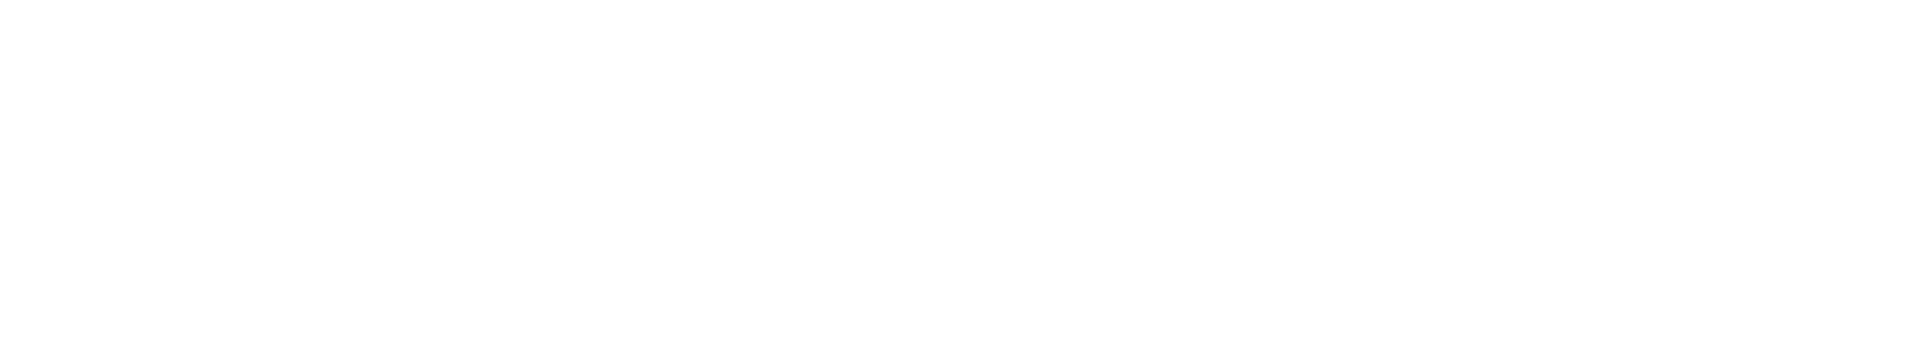 Hillpointe white logo.